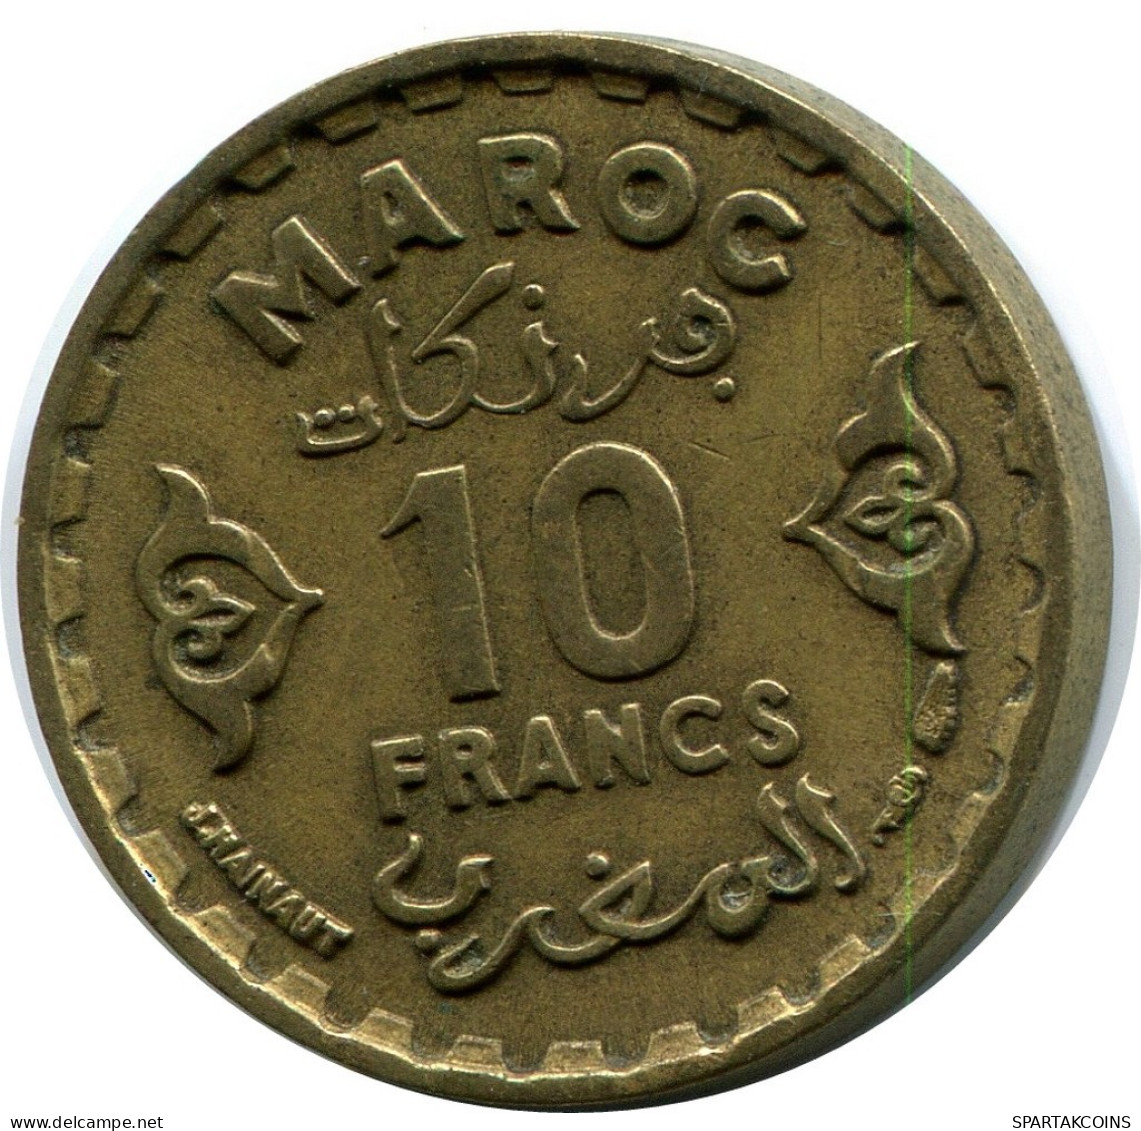 10 FRANCS 1952 MOROCCO Coin #AP248.U.A - Marokko